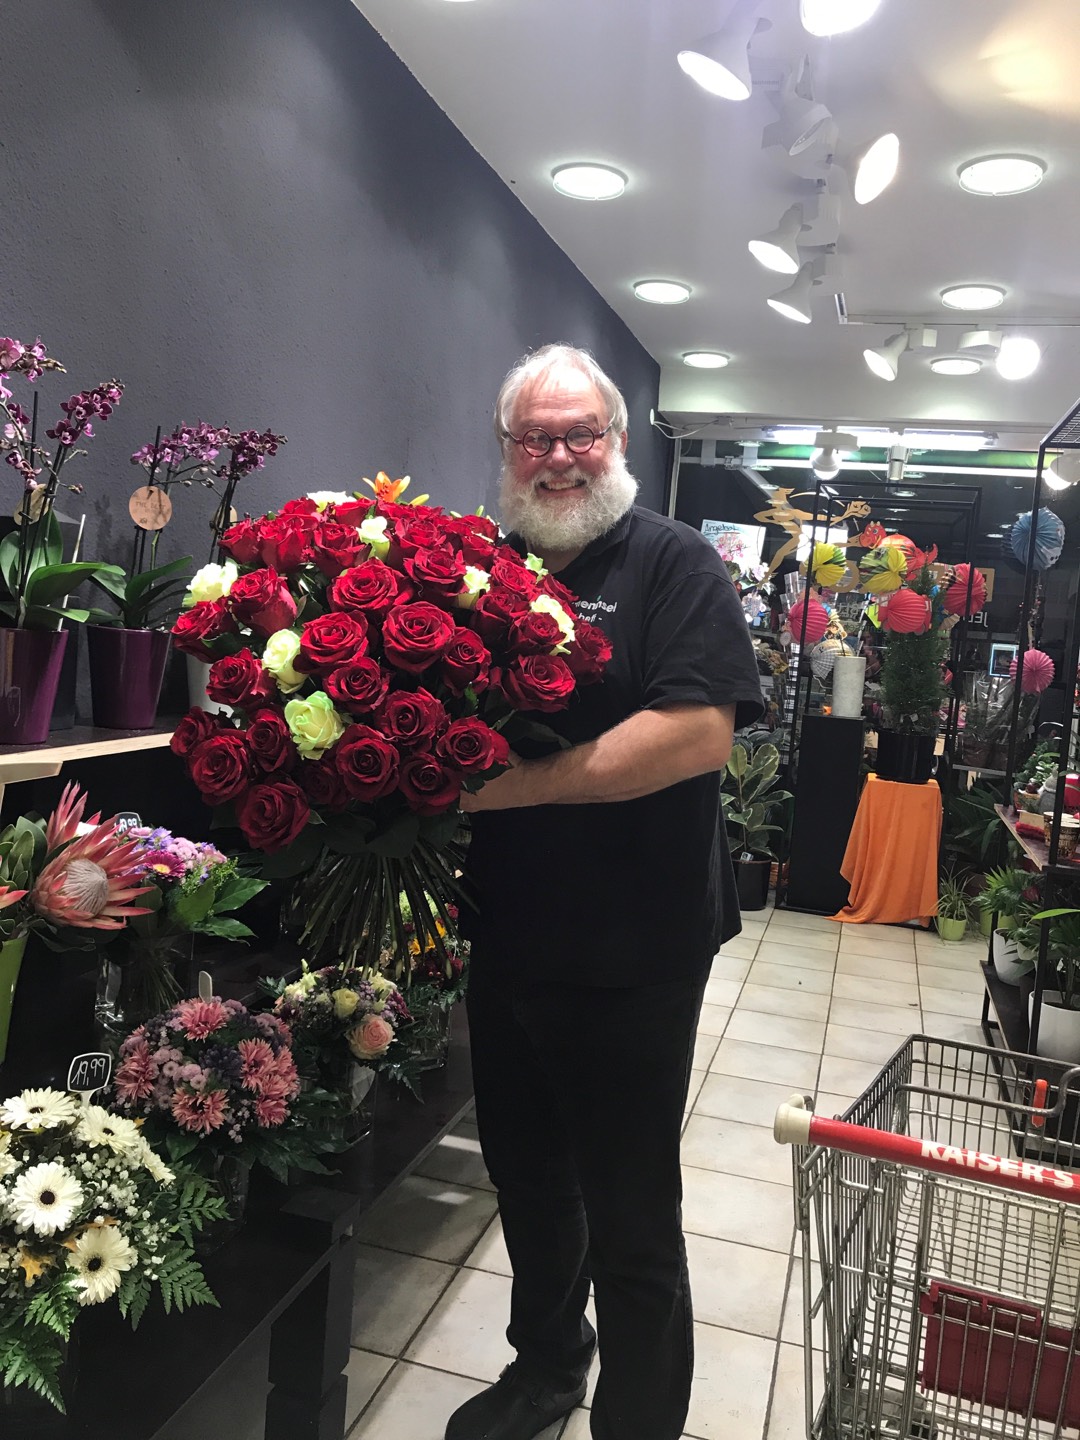 Inhaber Michael Eichstädt mit traumhaftem Rosenstrauß in rot und weiß in der Blumeninsel Eichstädt.